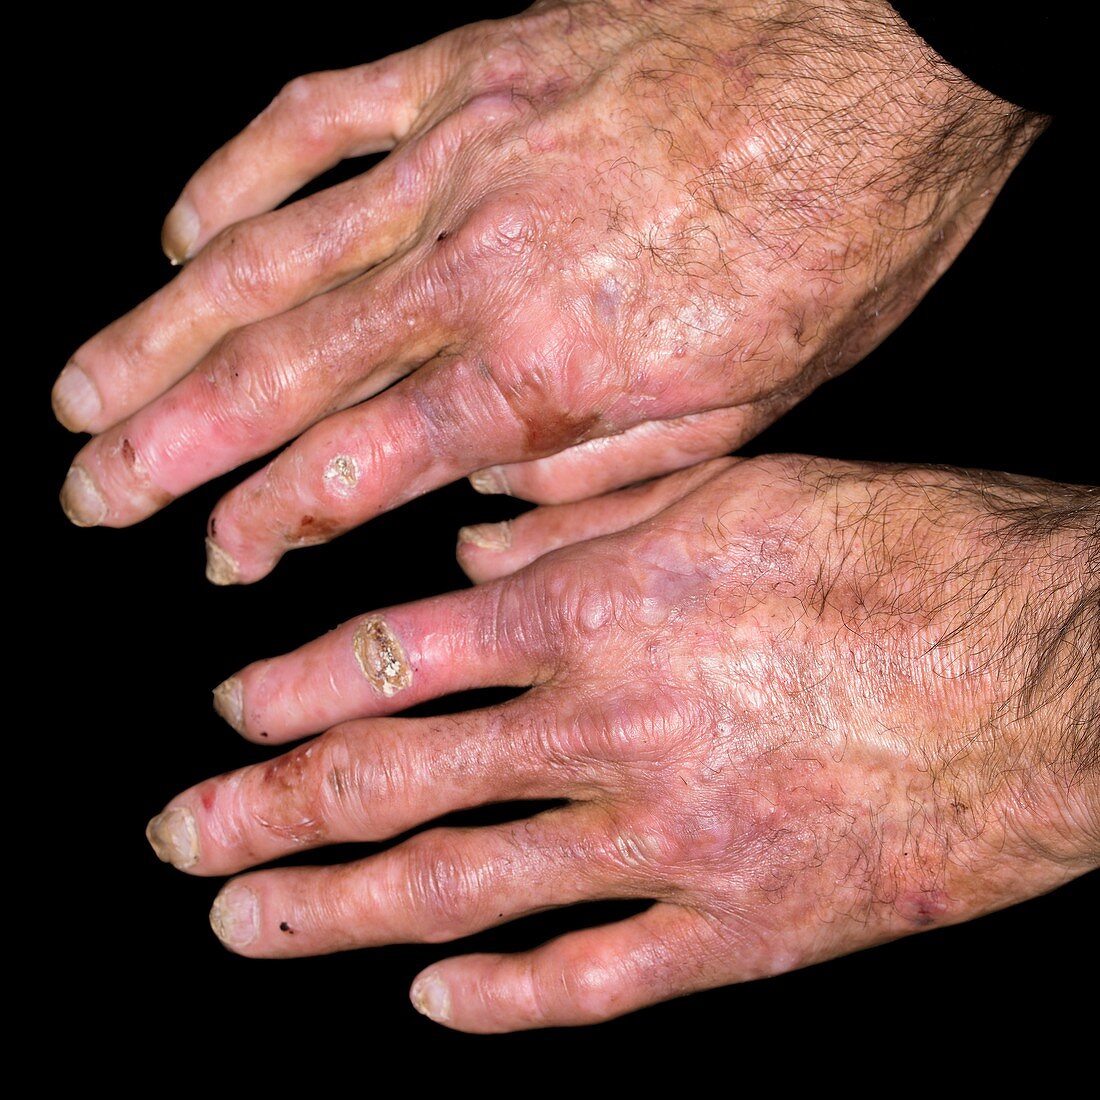 Hands in porphyria